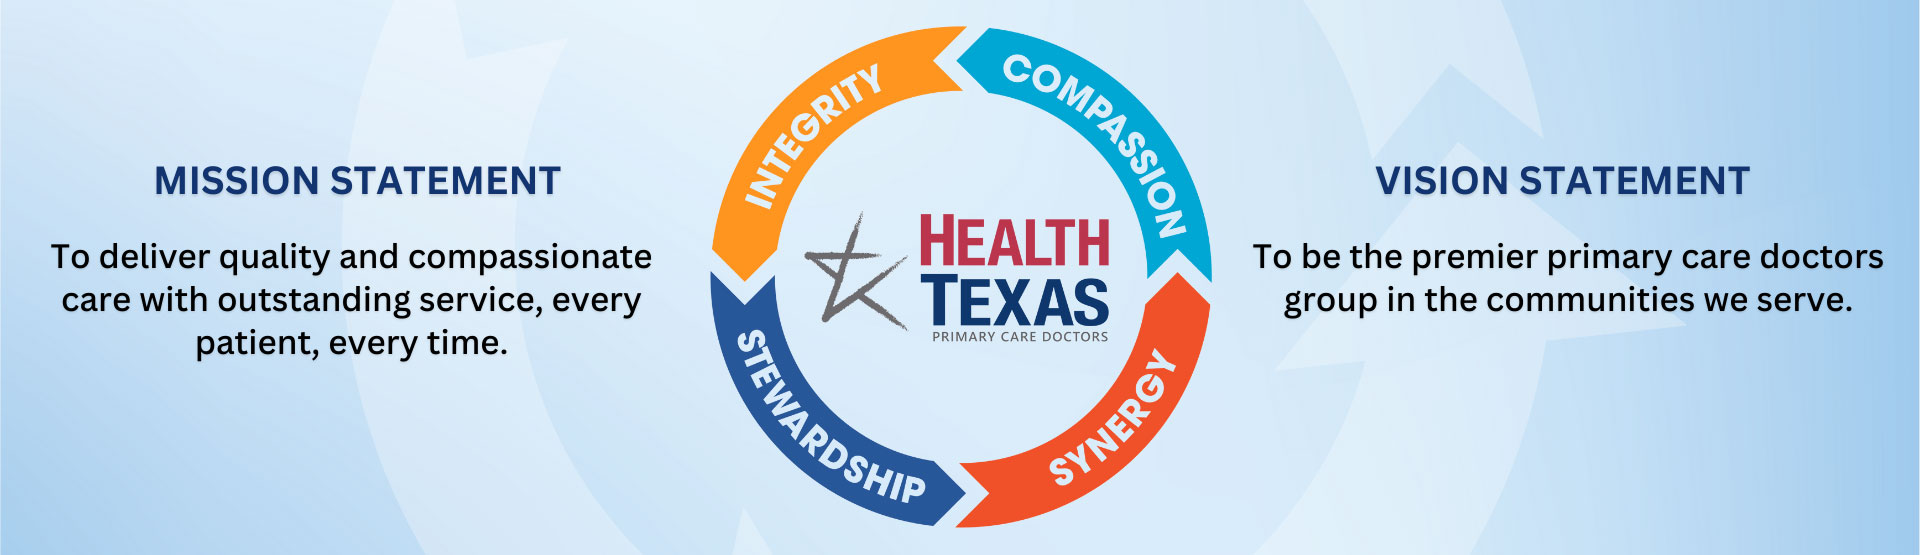 healthTexas mission statement